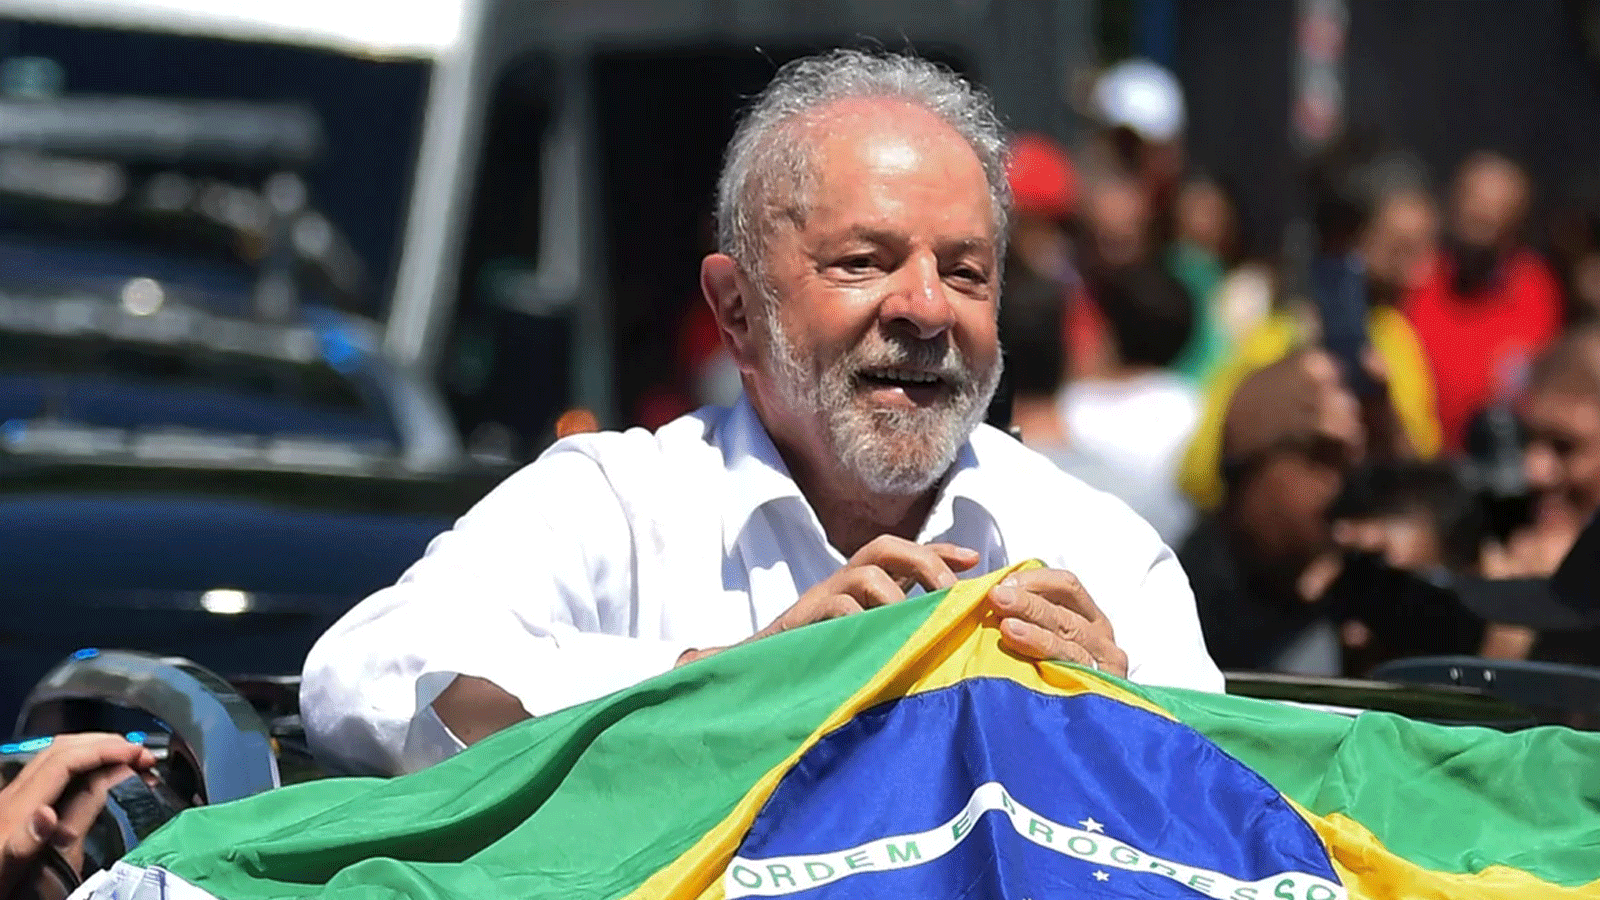 لويز ايناسيو لولا دا سيلفا يحمل العلم البرازيلي أثناء مغادرته إحدى مراكز الاقتراع في ساو باولو خلال الجولة الثانية من الانتخابات الرئاسية يوم الأحد 30 تشرين الأول\ أكتوبر 2022